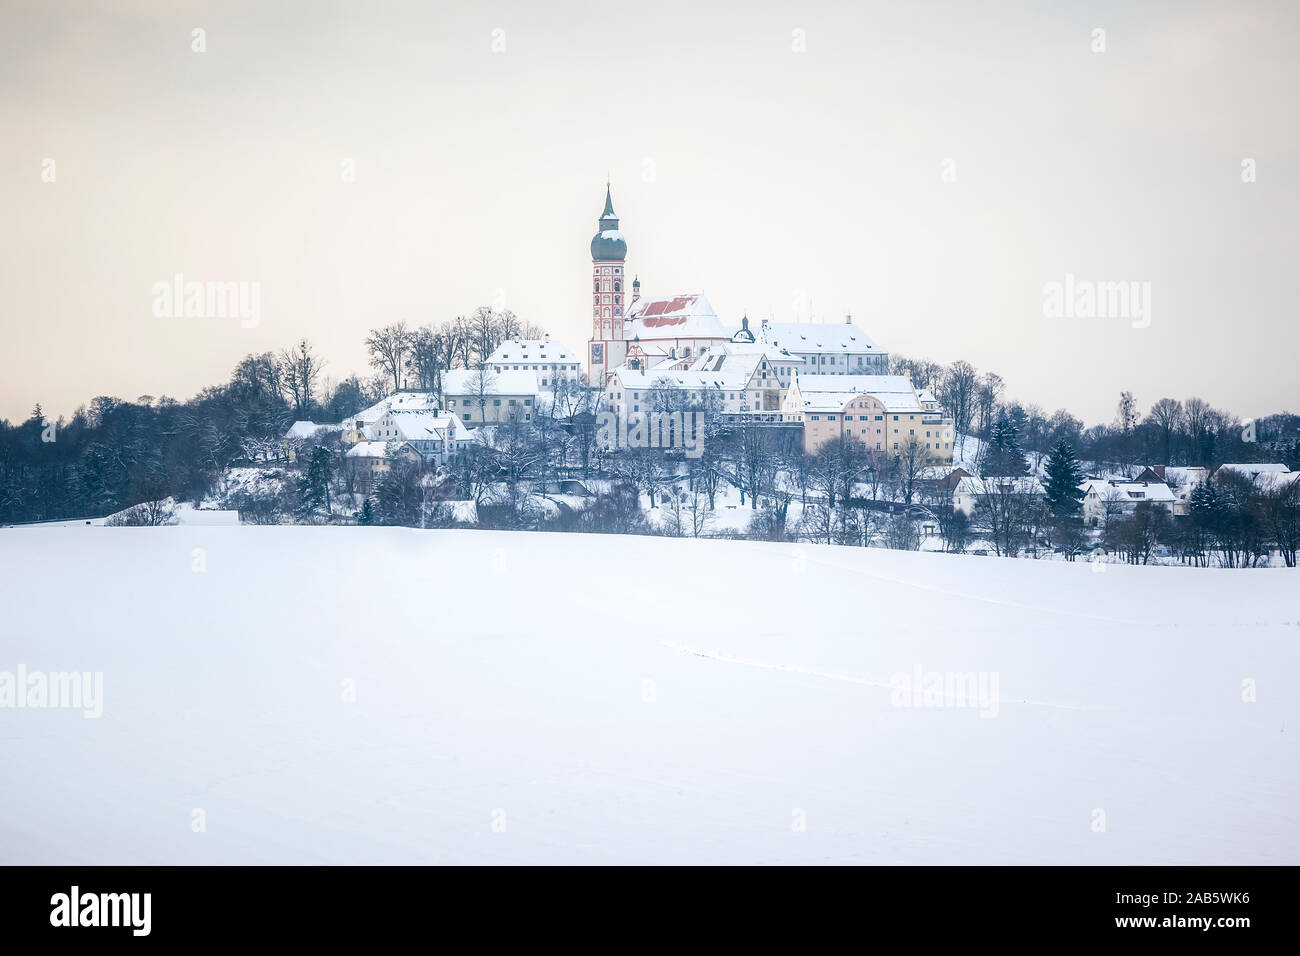 Das schoene Kloster Andechs im inverno Foto Stock